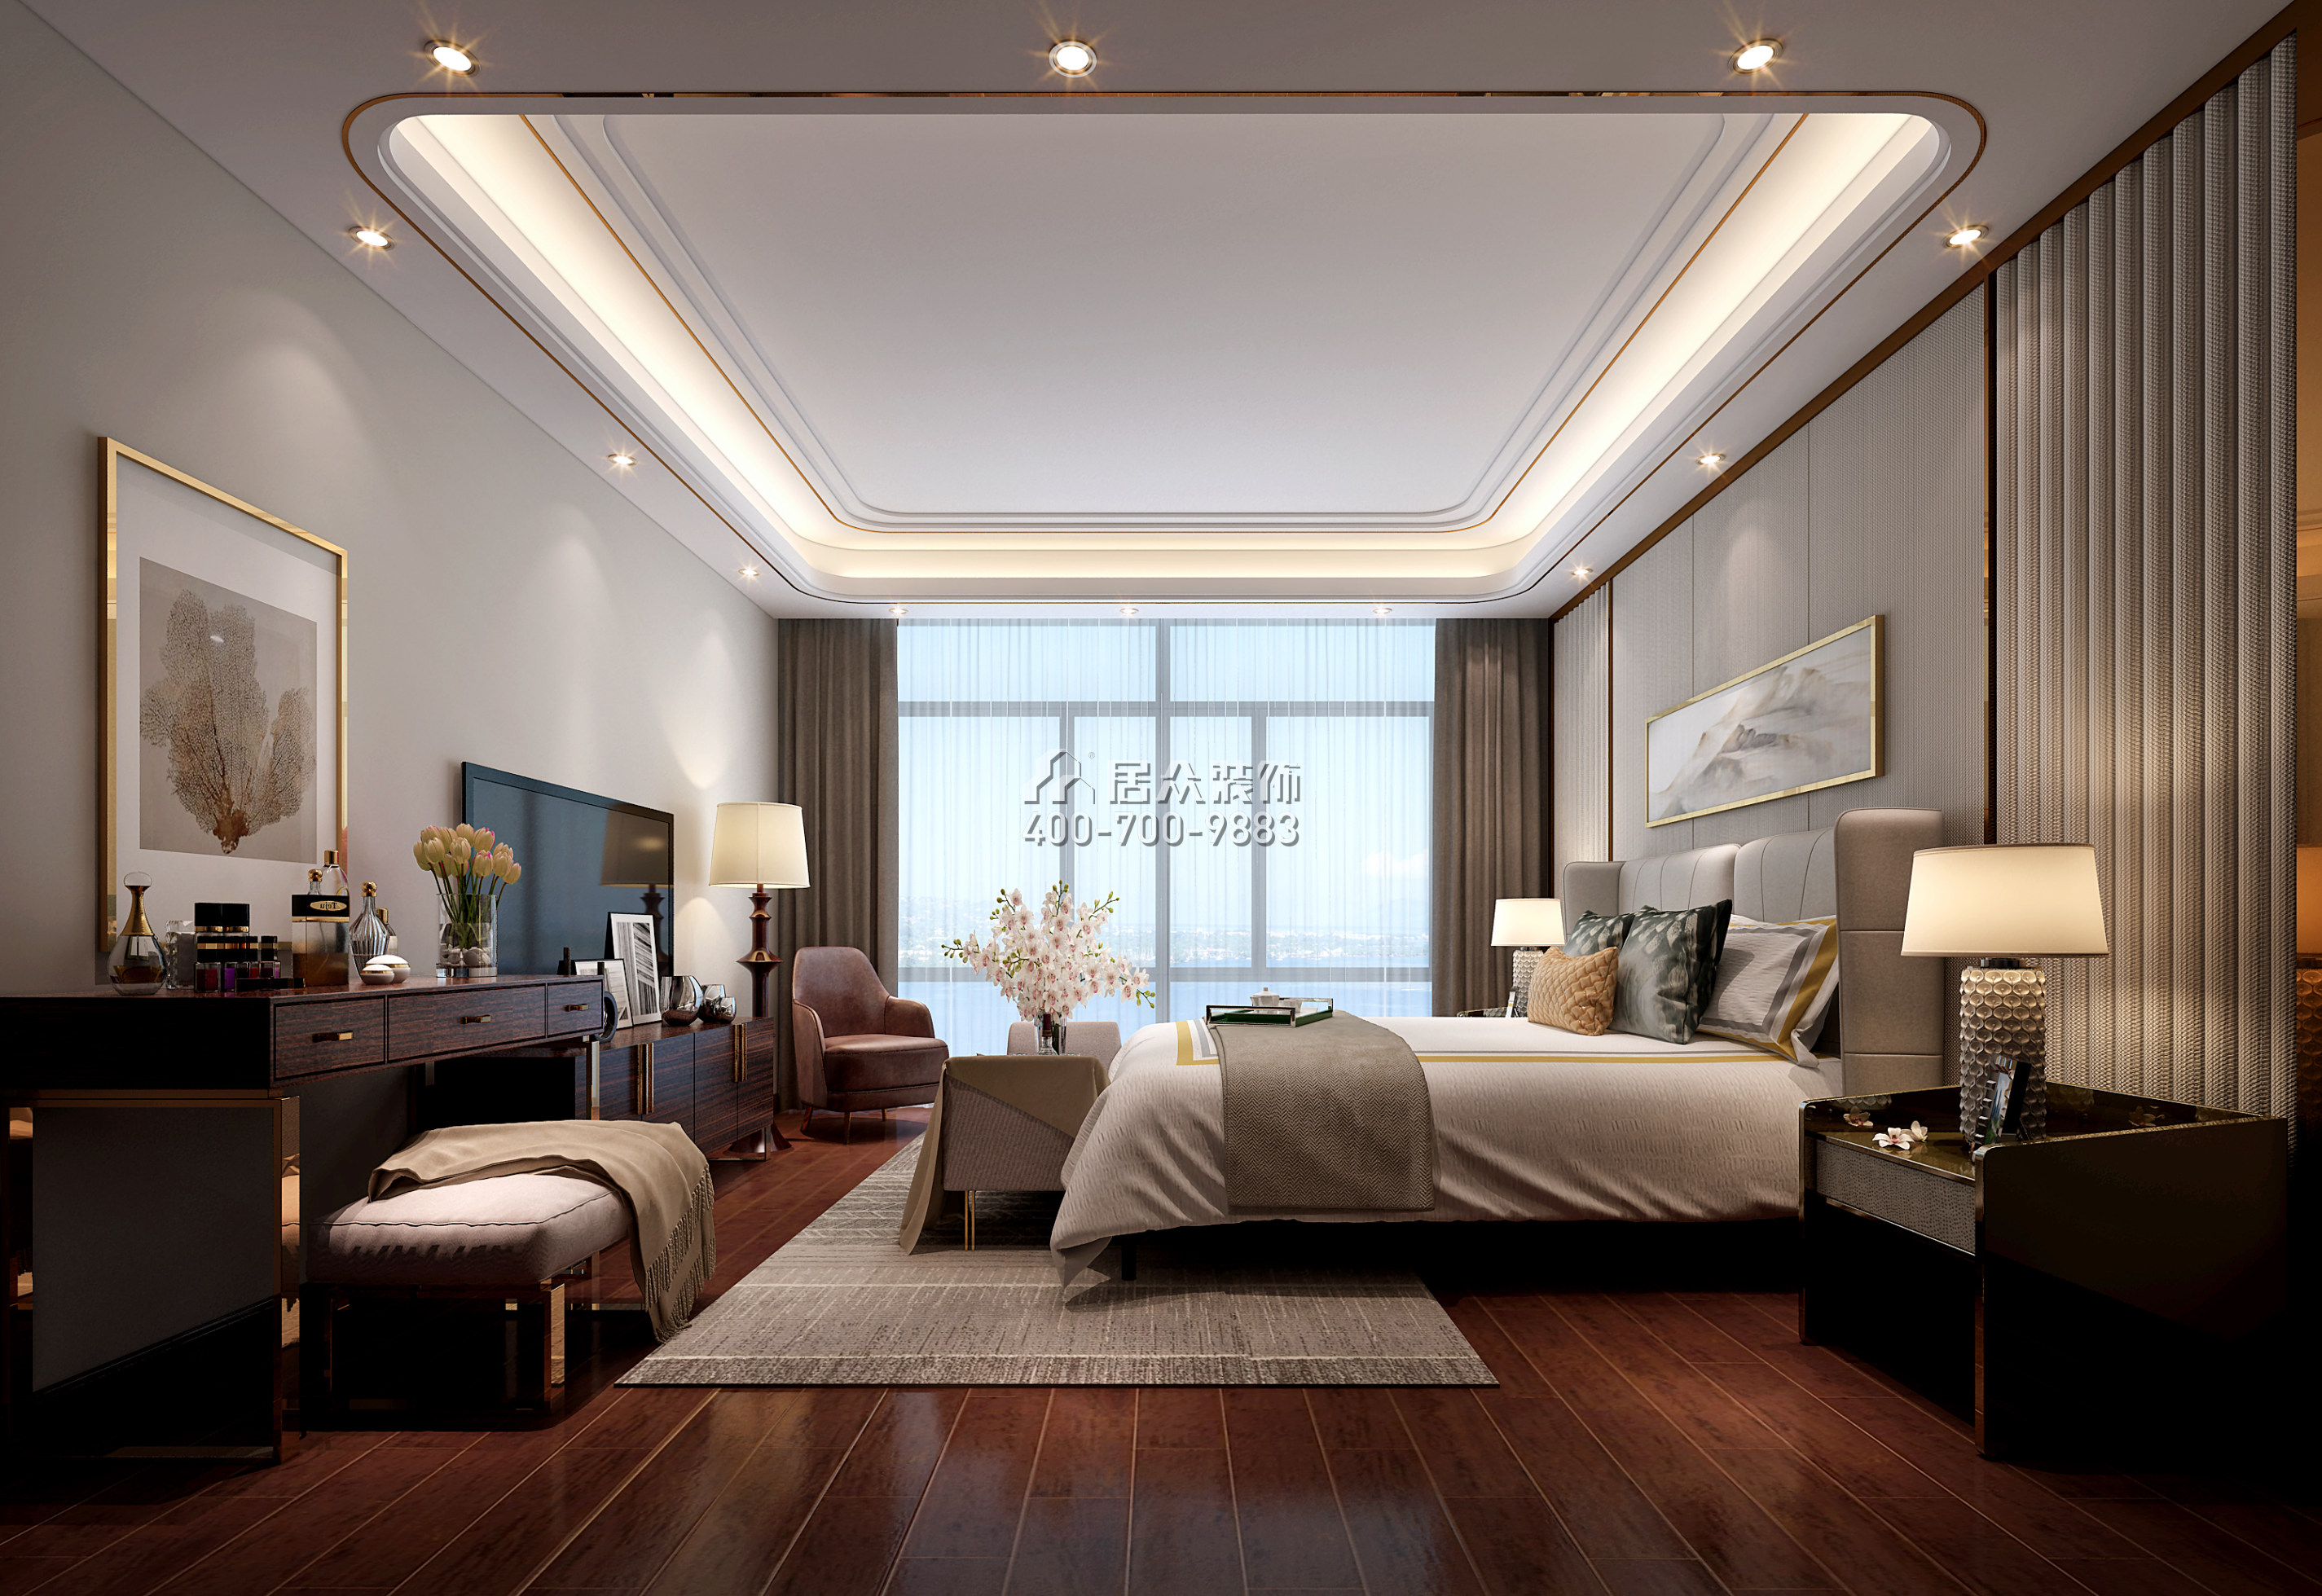 红树西岸花园209平方米现代简约风格平层户型卧室装修效果图